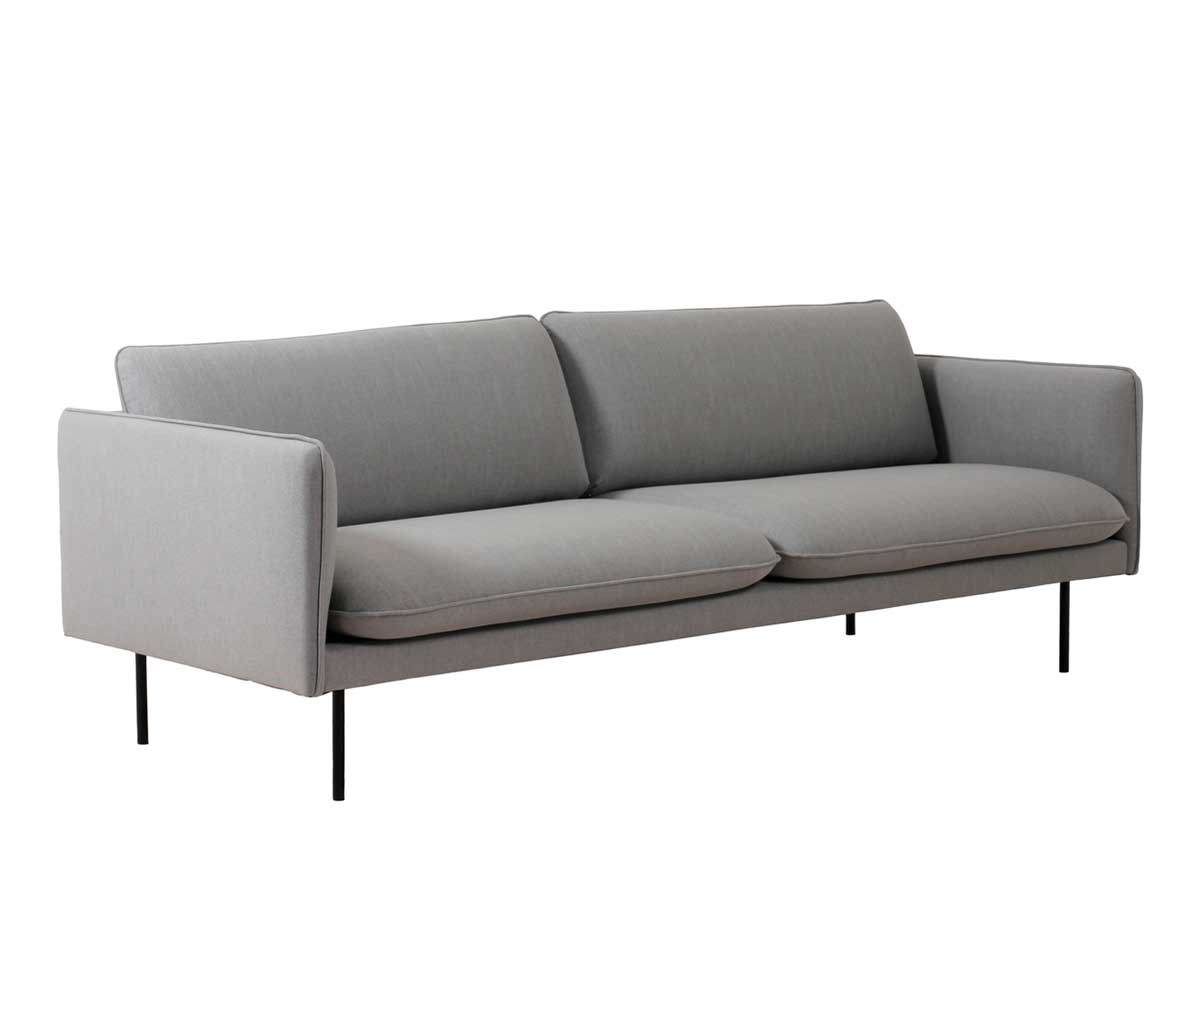 Levon-sohva